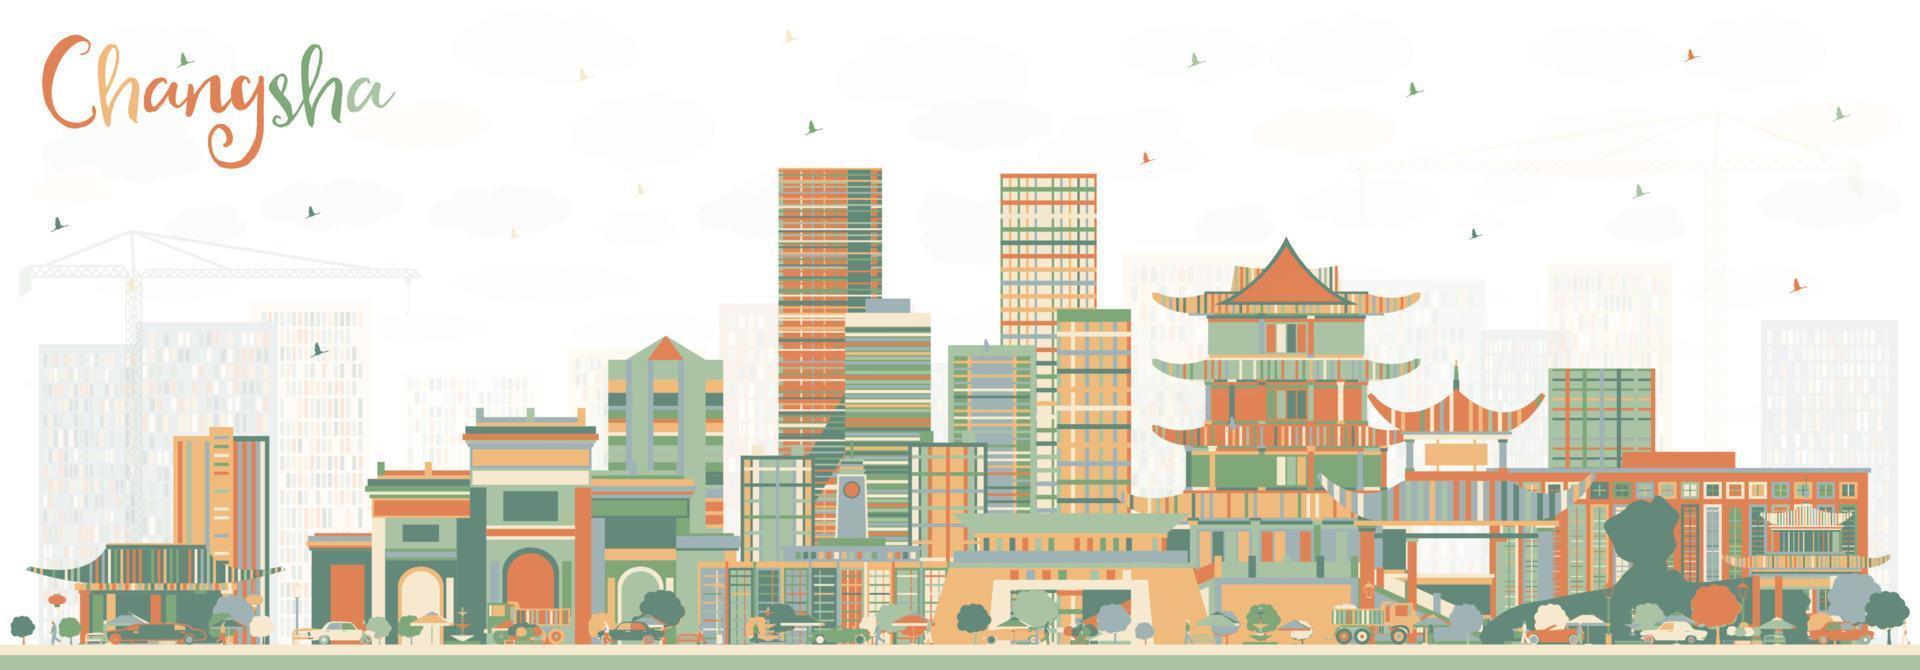 horizonte da cidade de changsha china com edifícios de cor. vetor